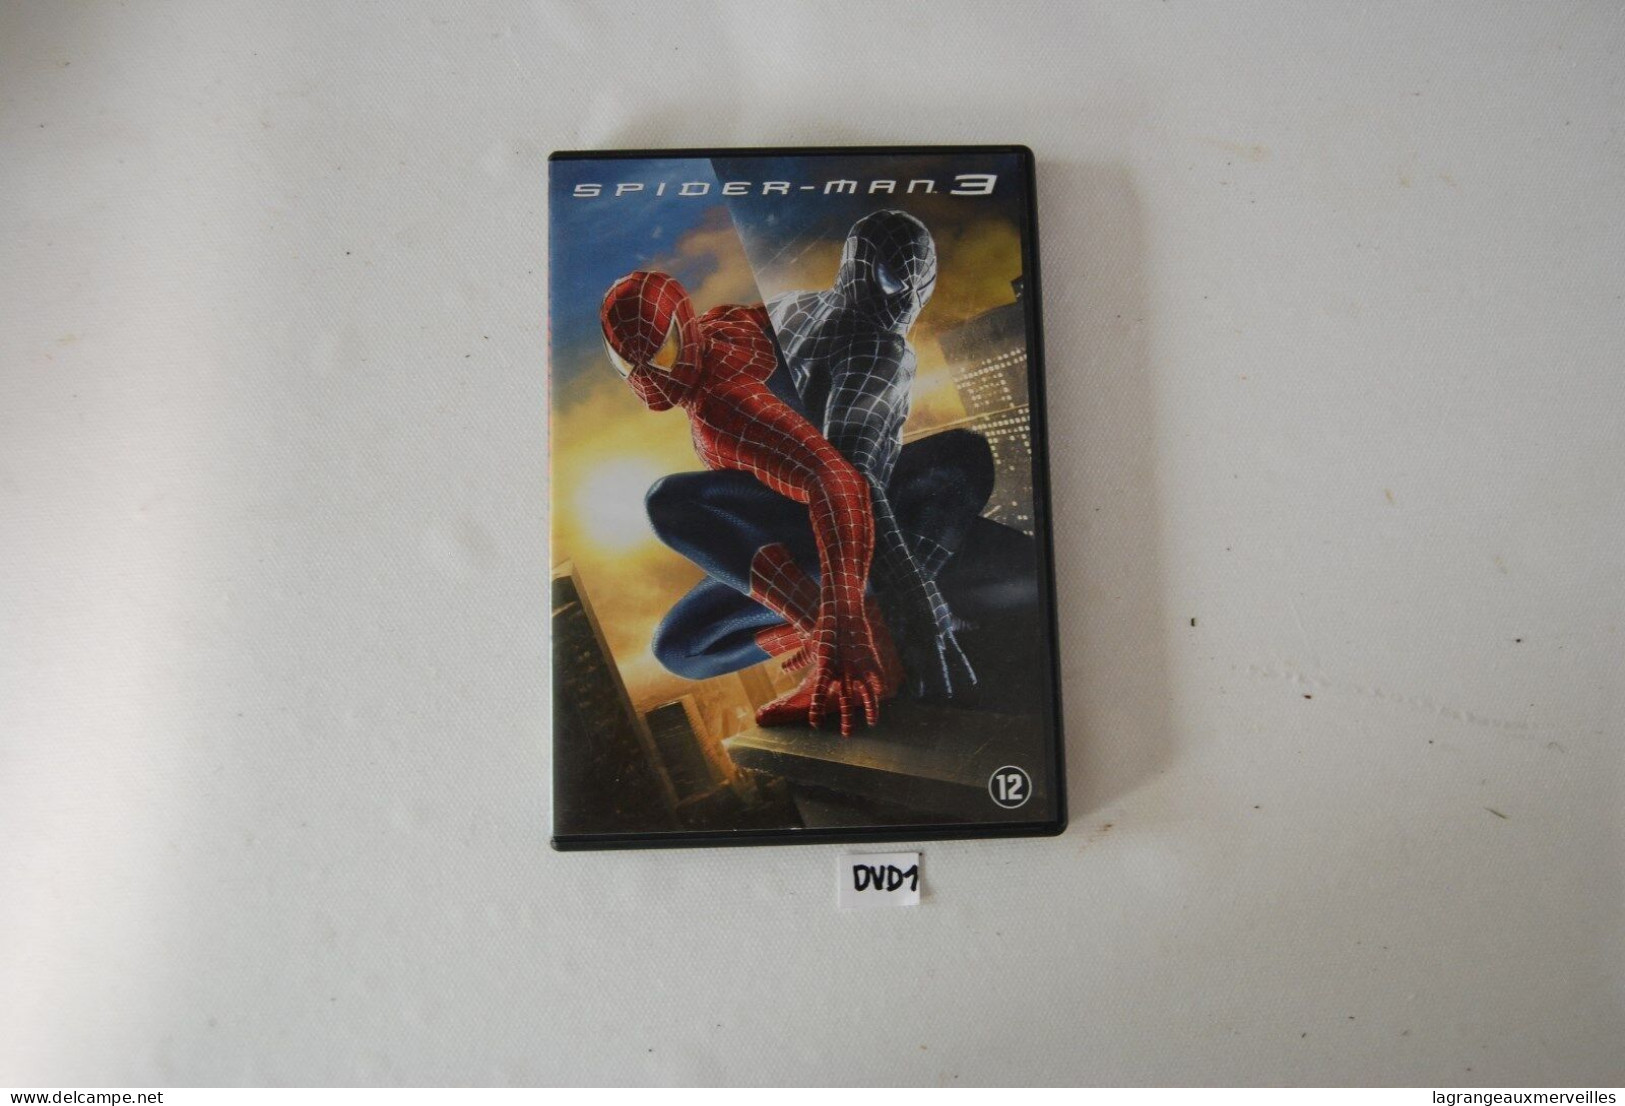 DVD 1 - SPIDER MAN 3 - Actie, Avontuur